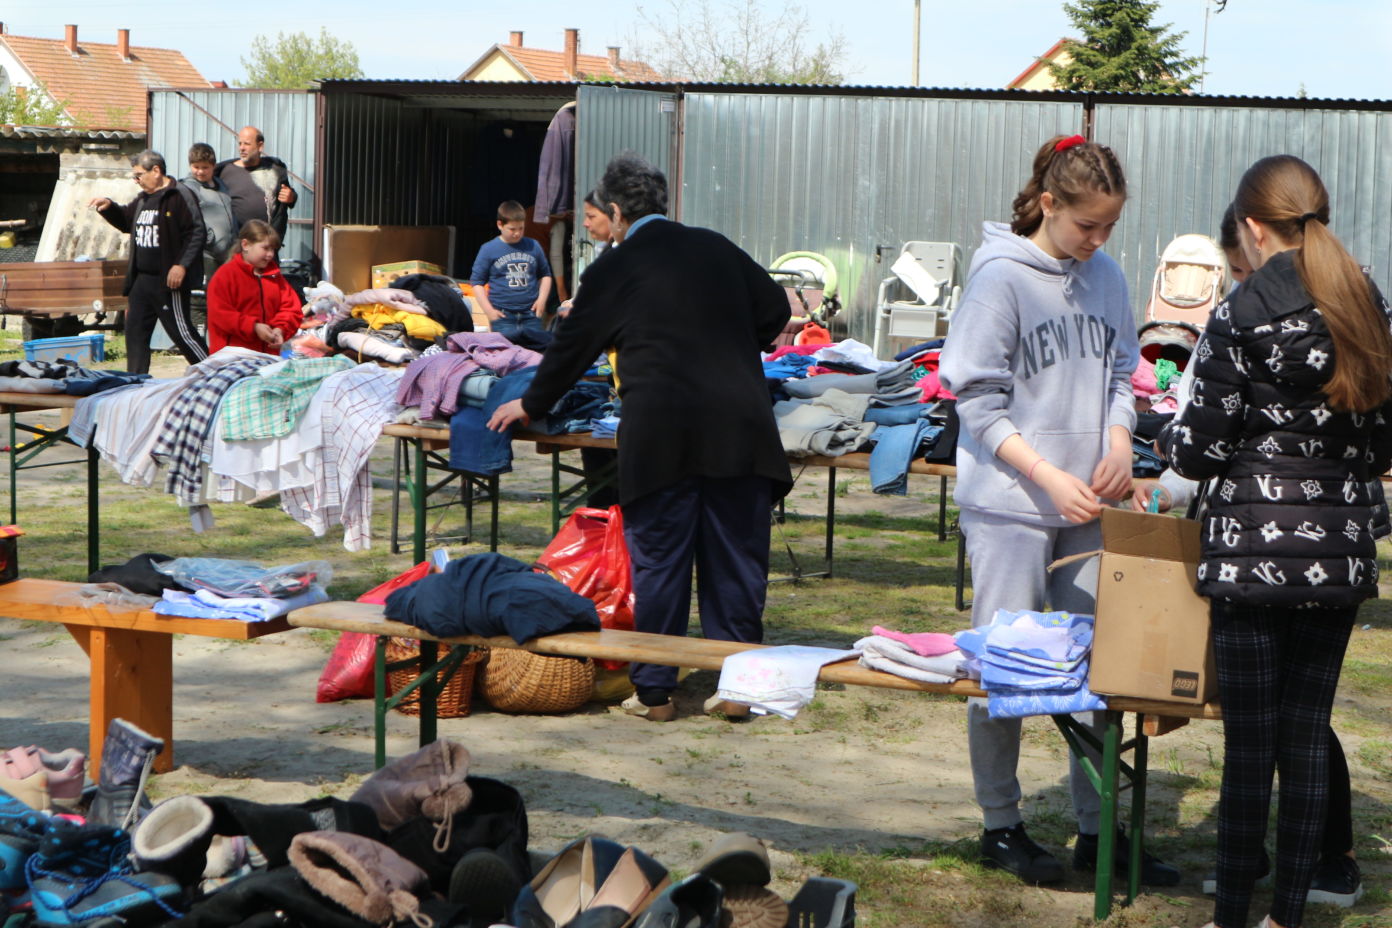 Ingyenes ruhaosztást szervezett a Rászoruló Magyarokért Egyesület